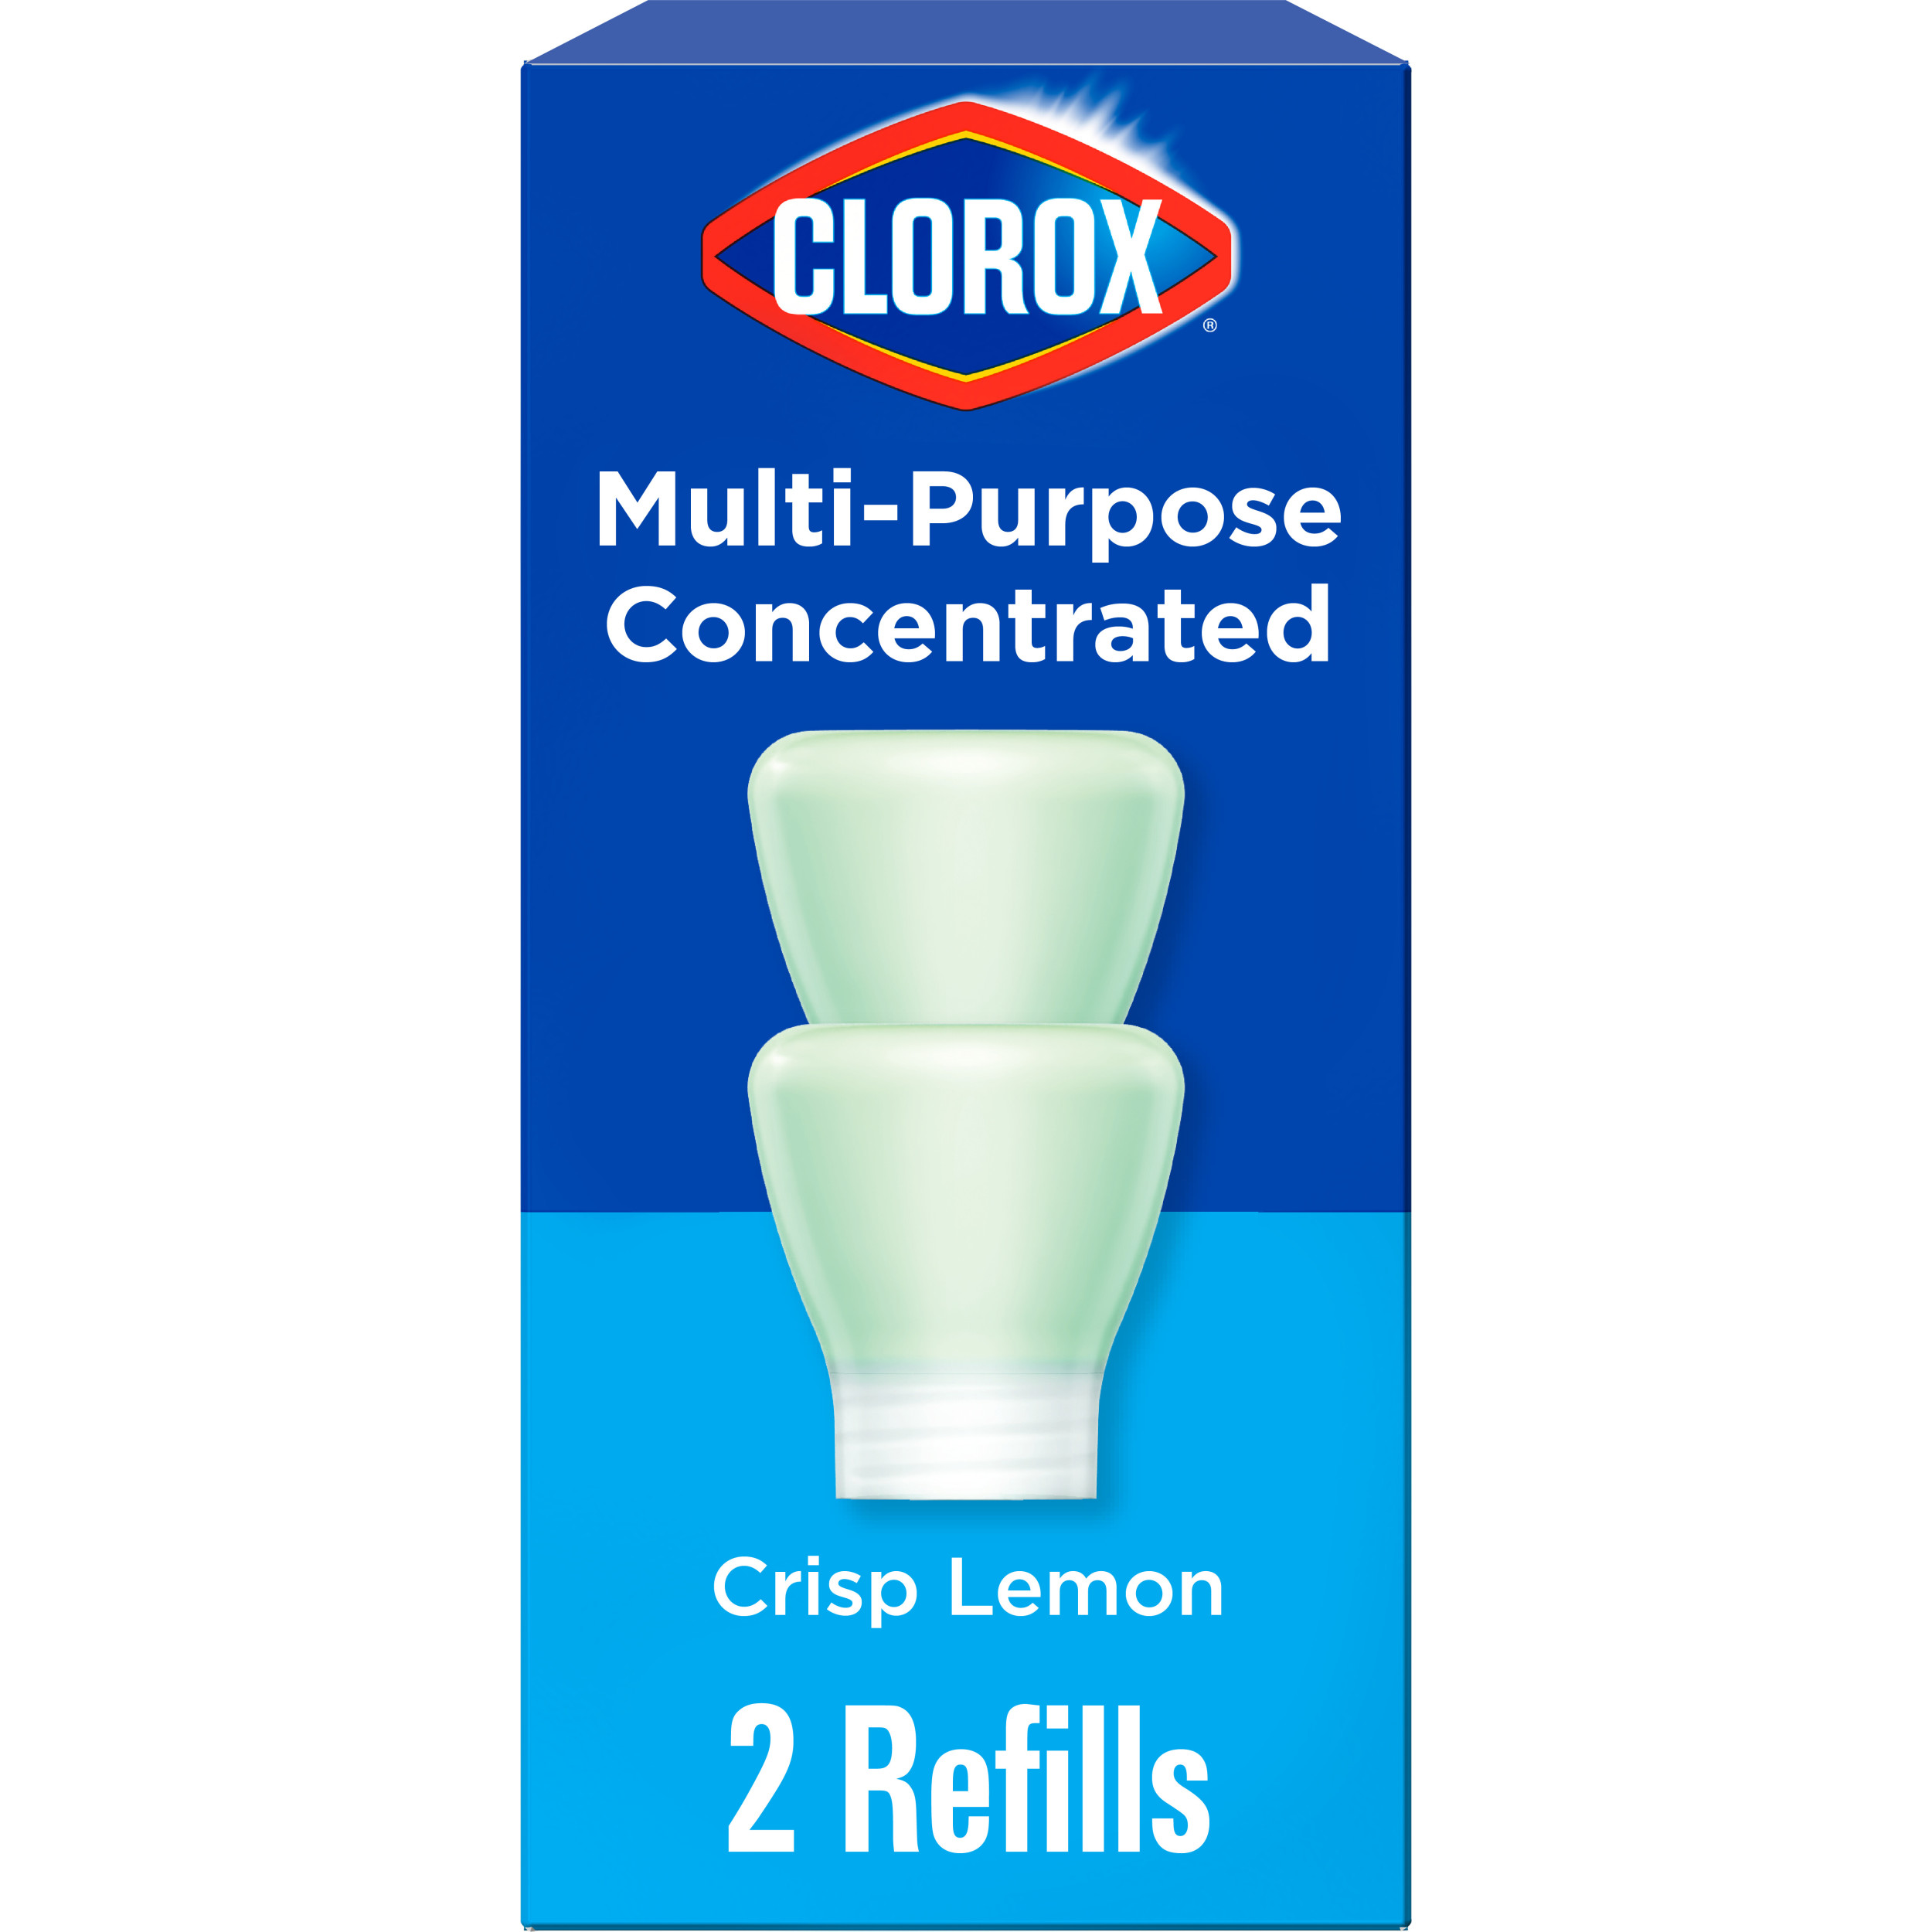 Clorox Multi-Purpose Cleaner System (Crisp Lemon): Starter Kit (1 Bottle + 1 Refill) or 2-Pack Refill Pods $1.98 + Free Shipping w/ WM+